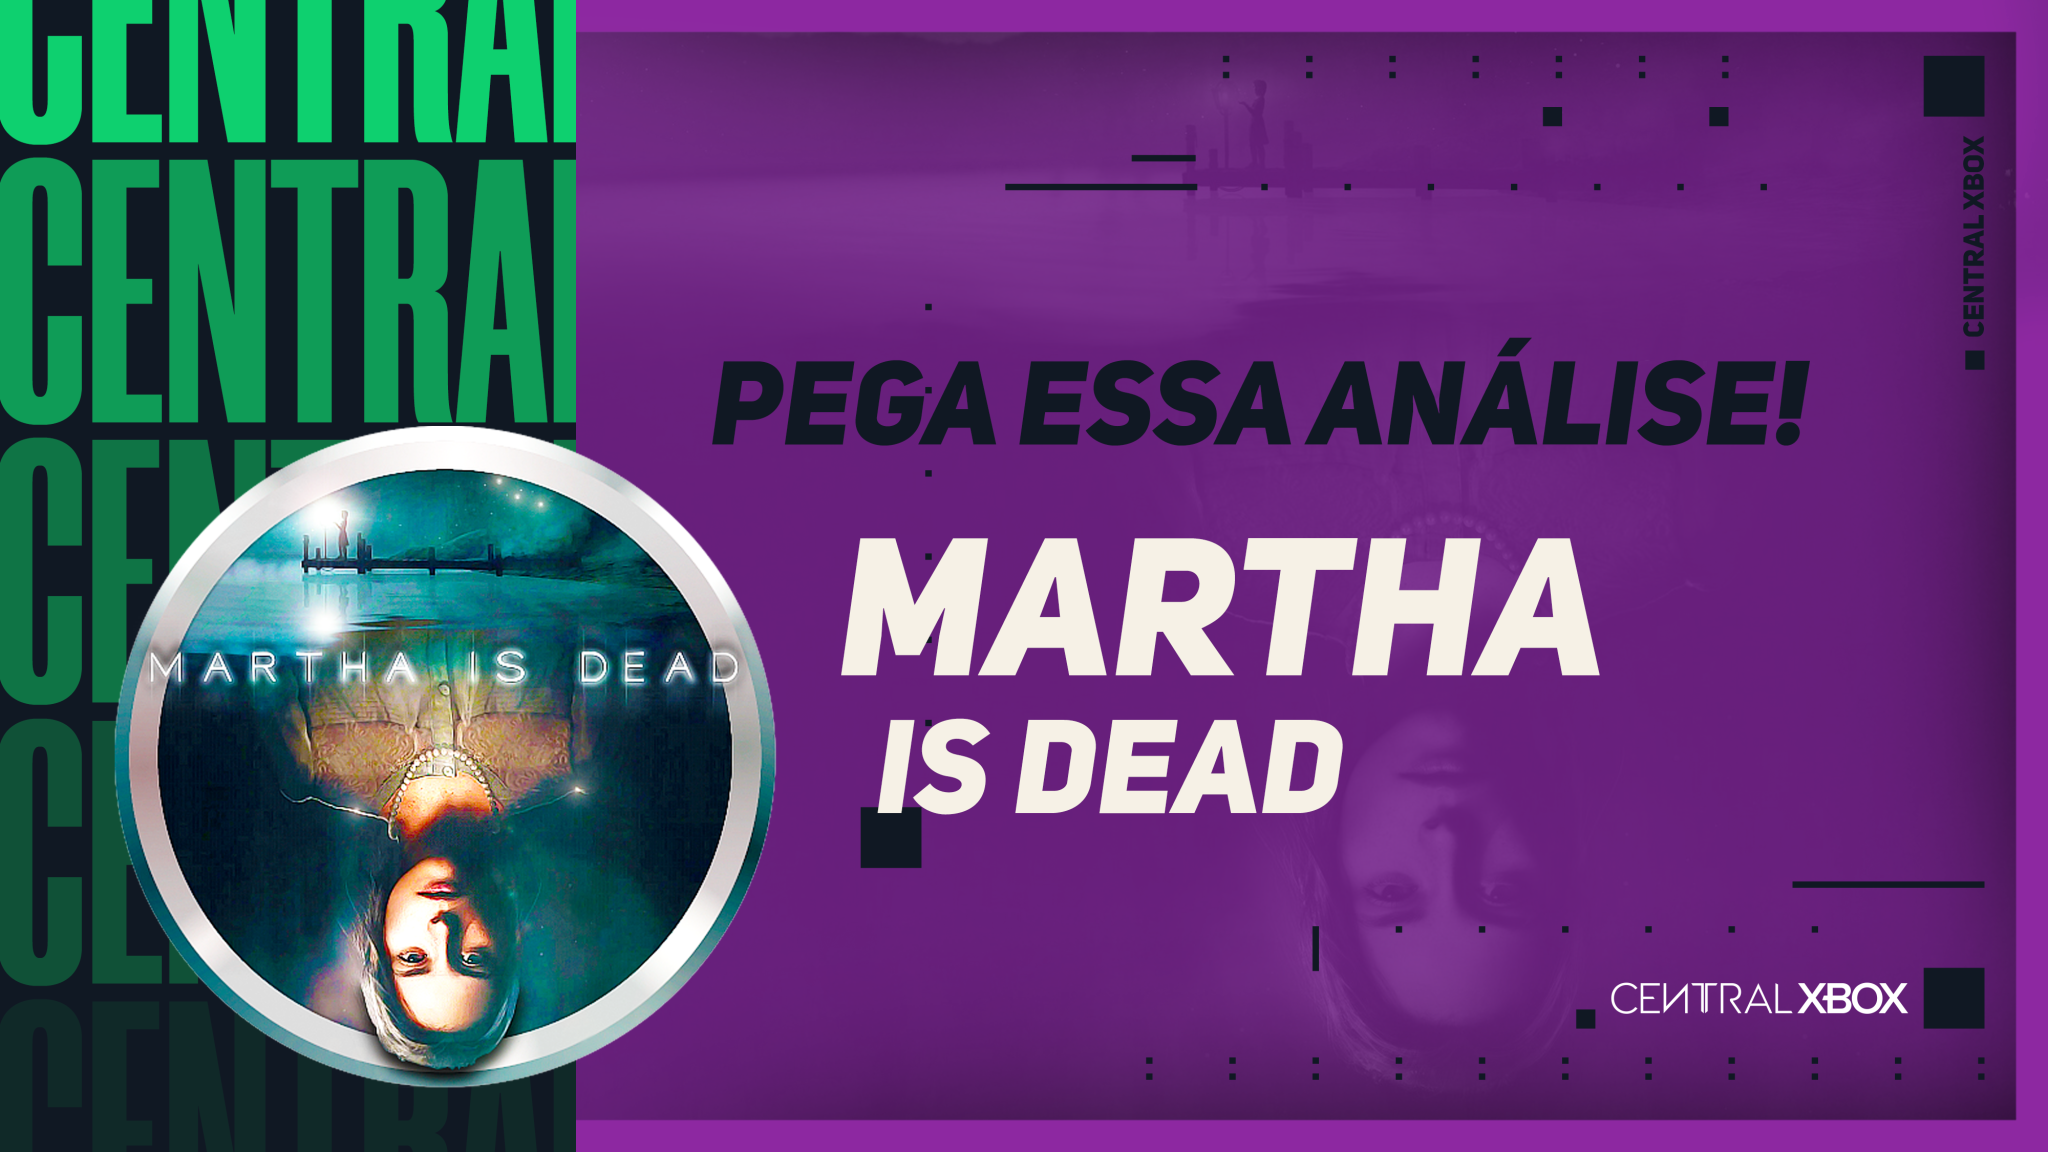 Martha is Dead é censurado no PS5 e PS4, mas não no Xbox e PC - Windows Club